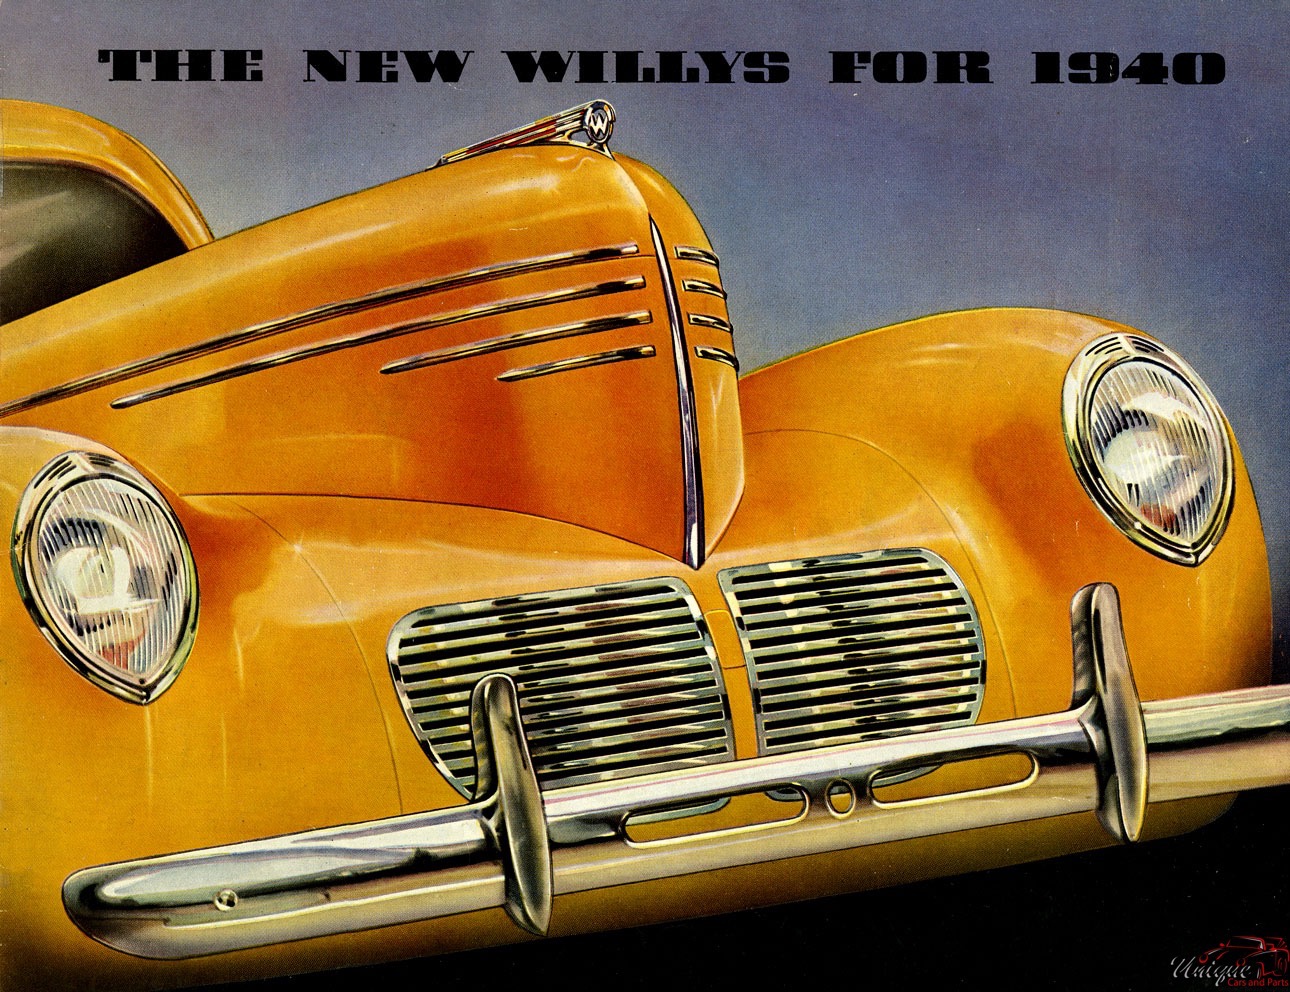 1940 Willys Full Line Brochure